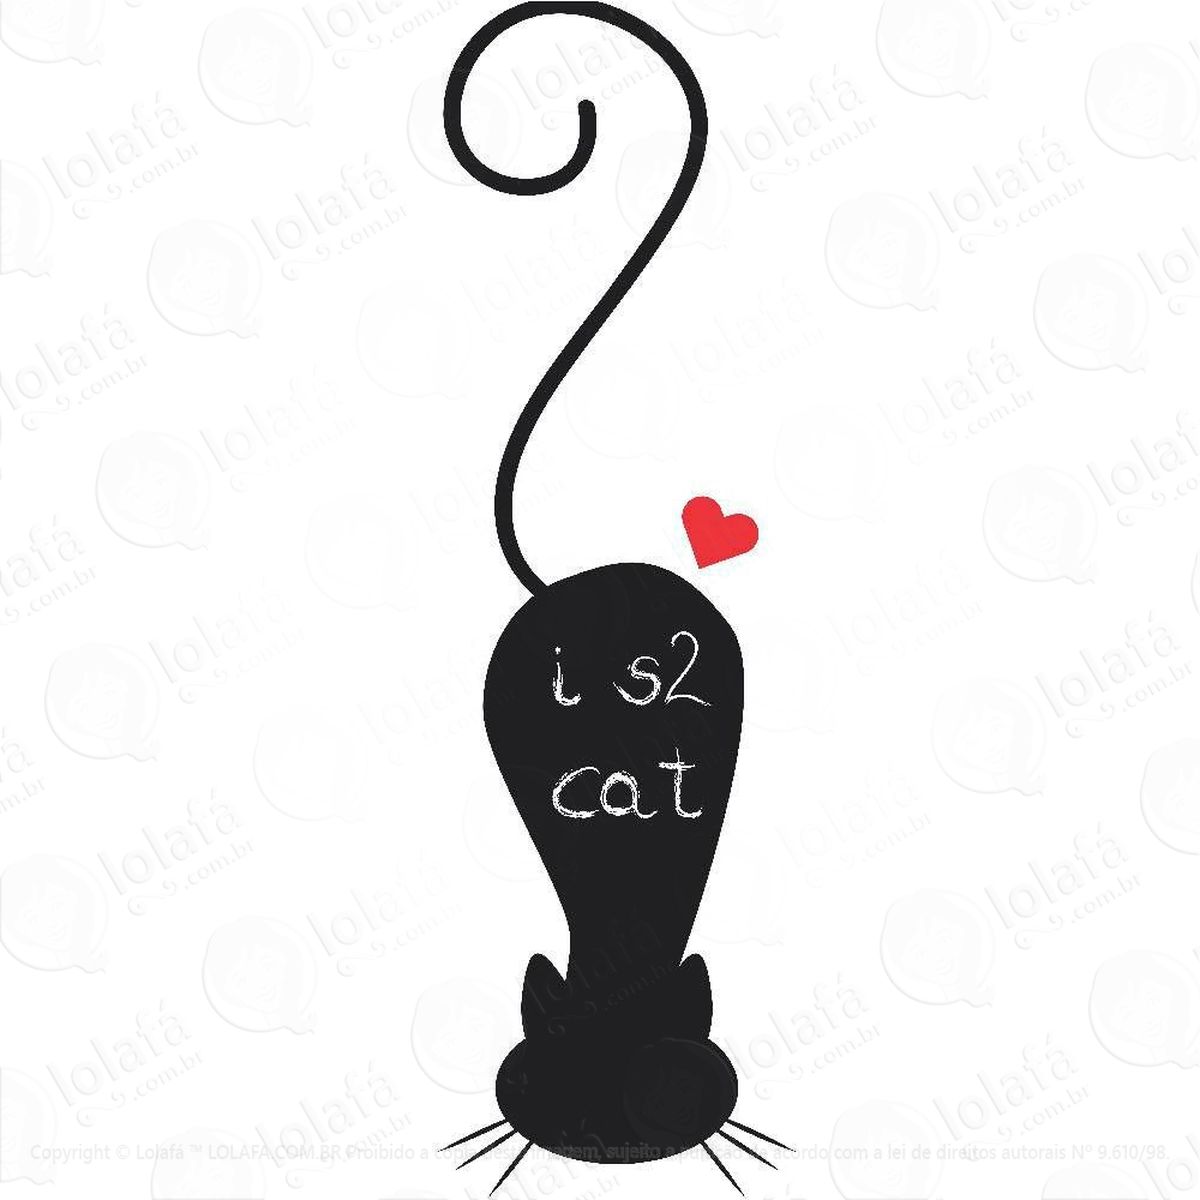 gato adesivo lousa quadro negro de parede para escrever com giz - mod:319